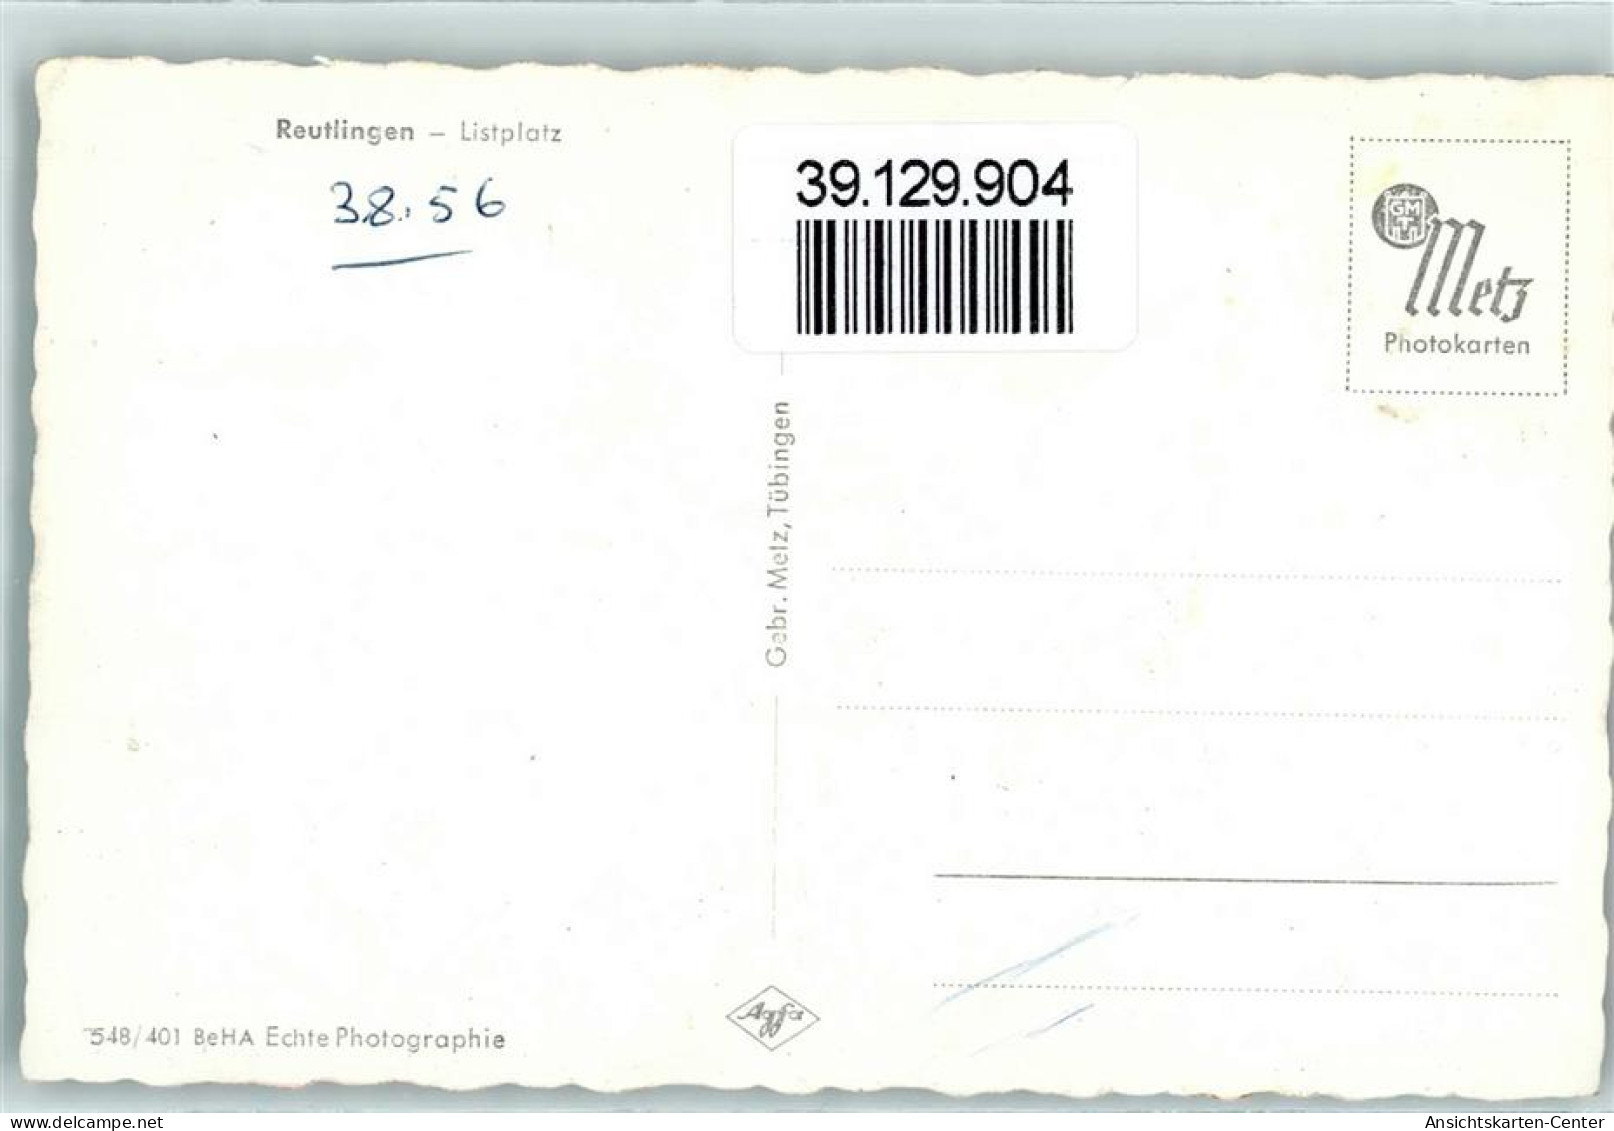 39129904 - Reutlingen - Reutlingen